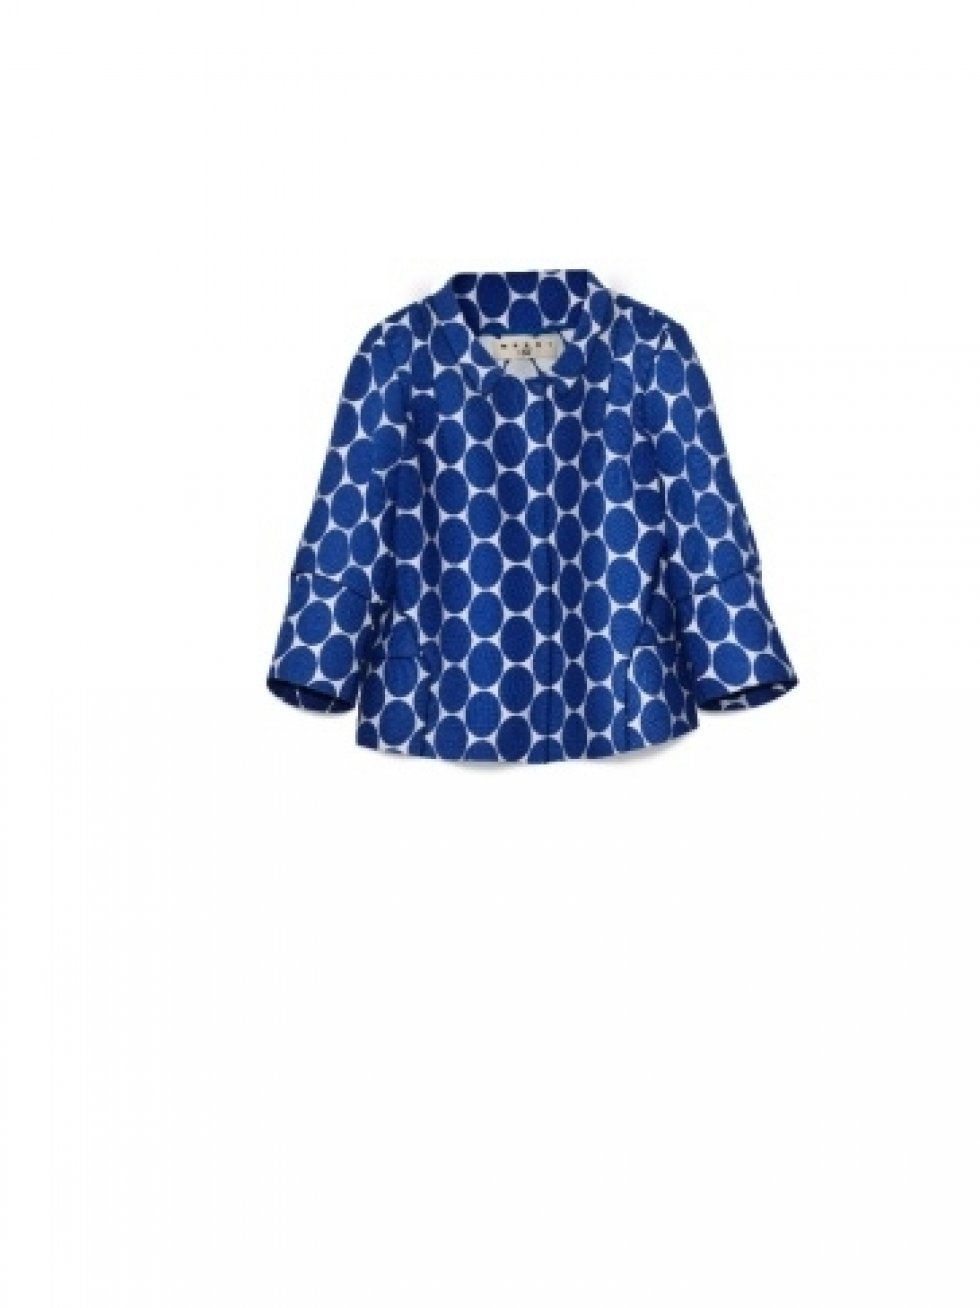 Blå jakke designet af Marni for H&M. - 23 tips til forårsmoden 2012